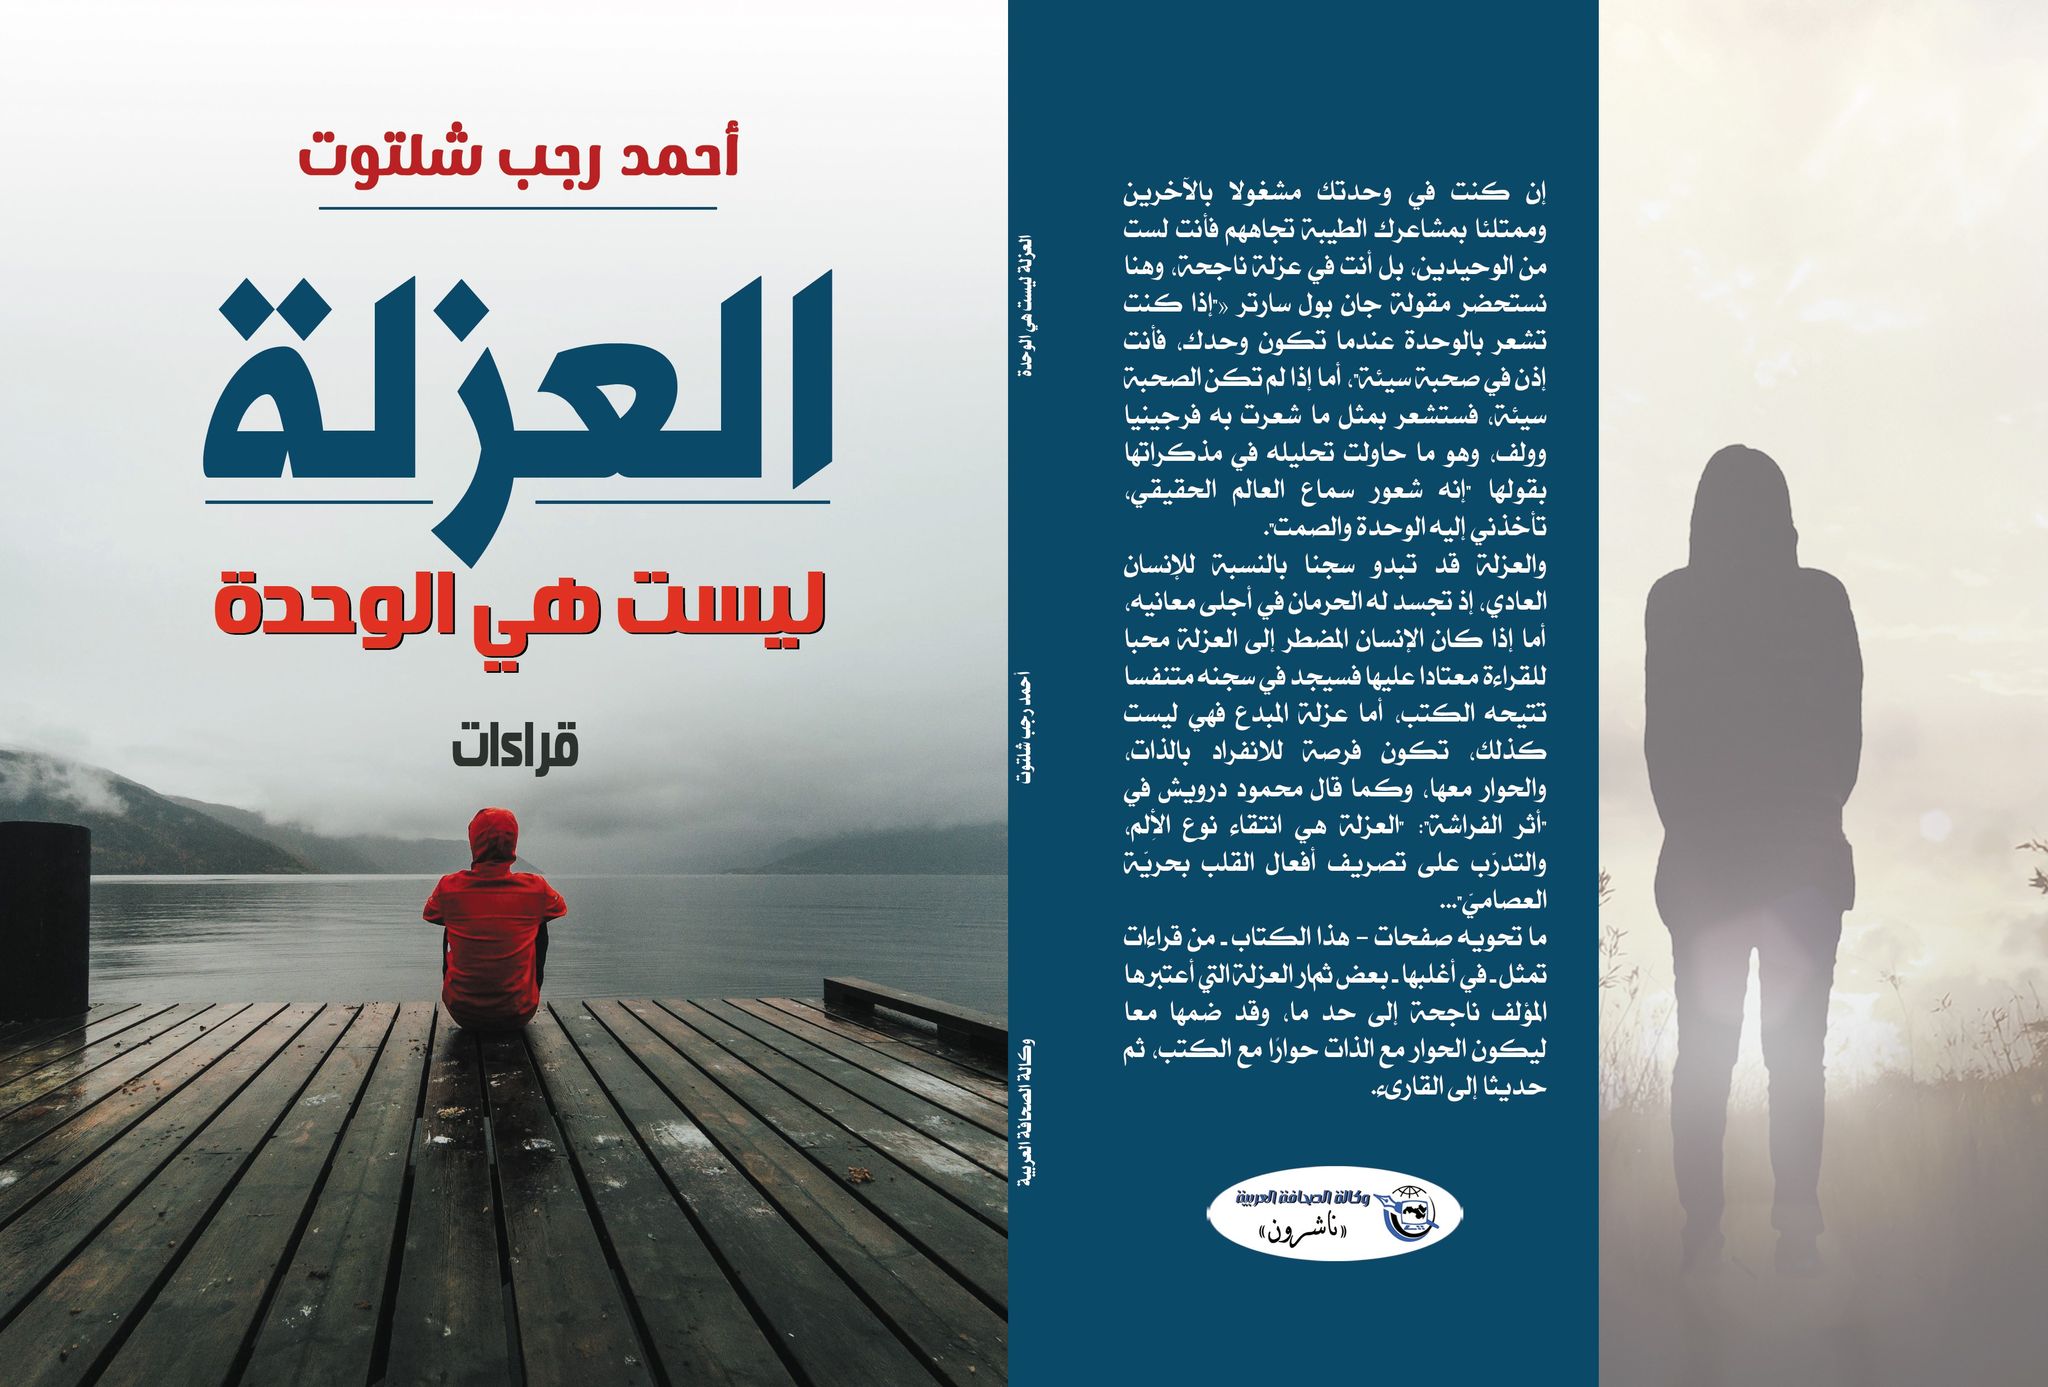 العزلة ليست هي الوحدة ..كتاب جديد أحمد رجب شلتوت